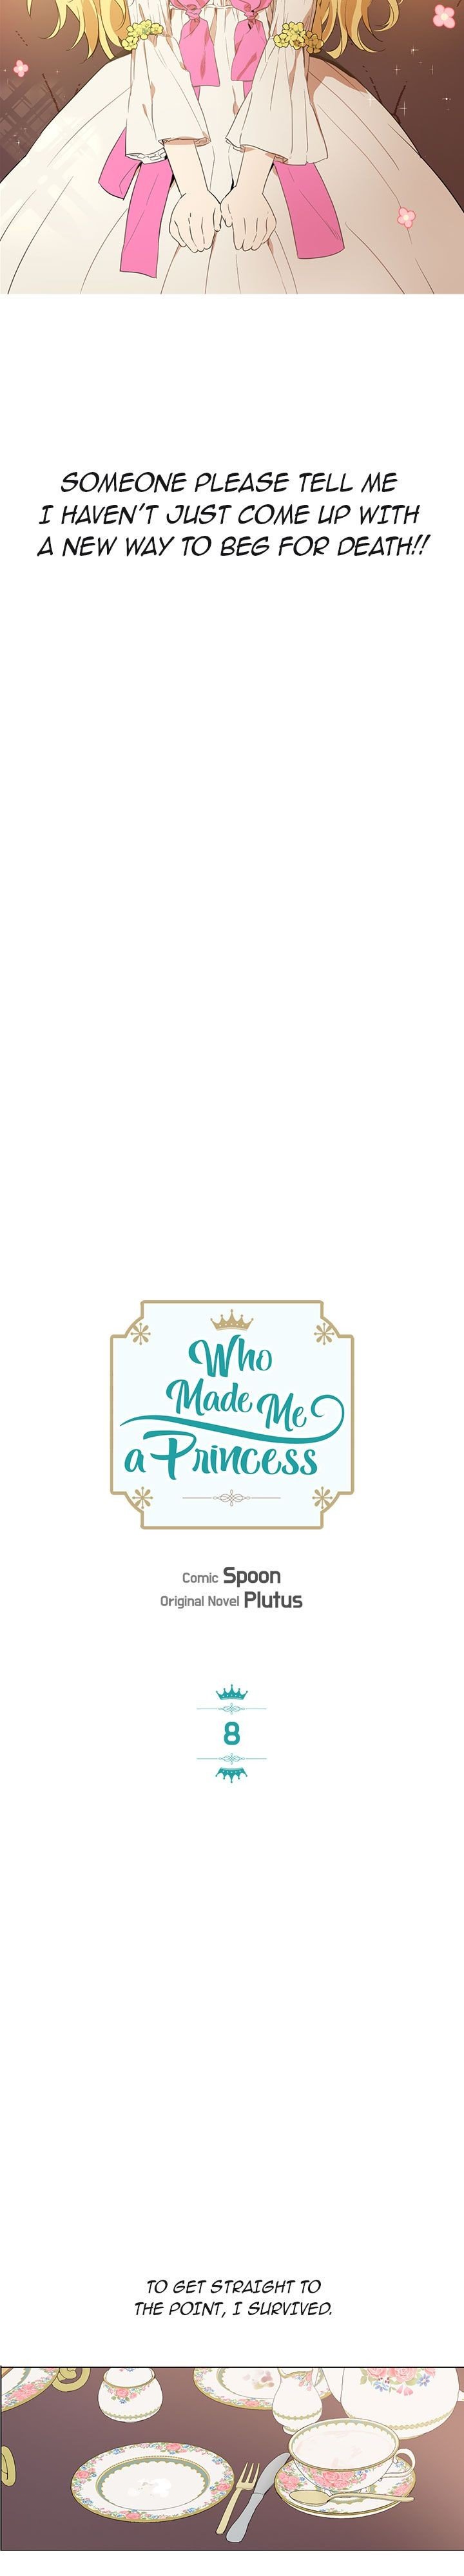 who-made-me-a-princess-chap-8-6